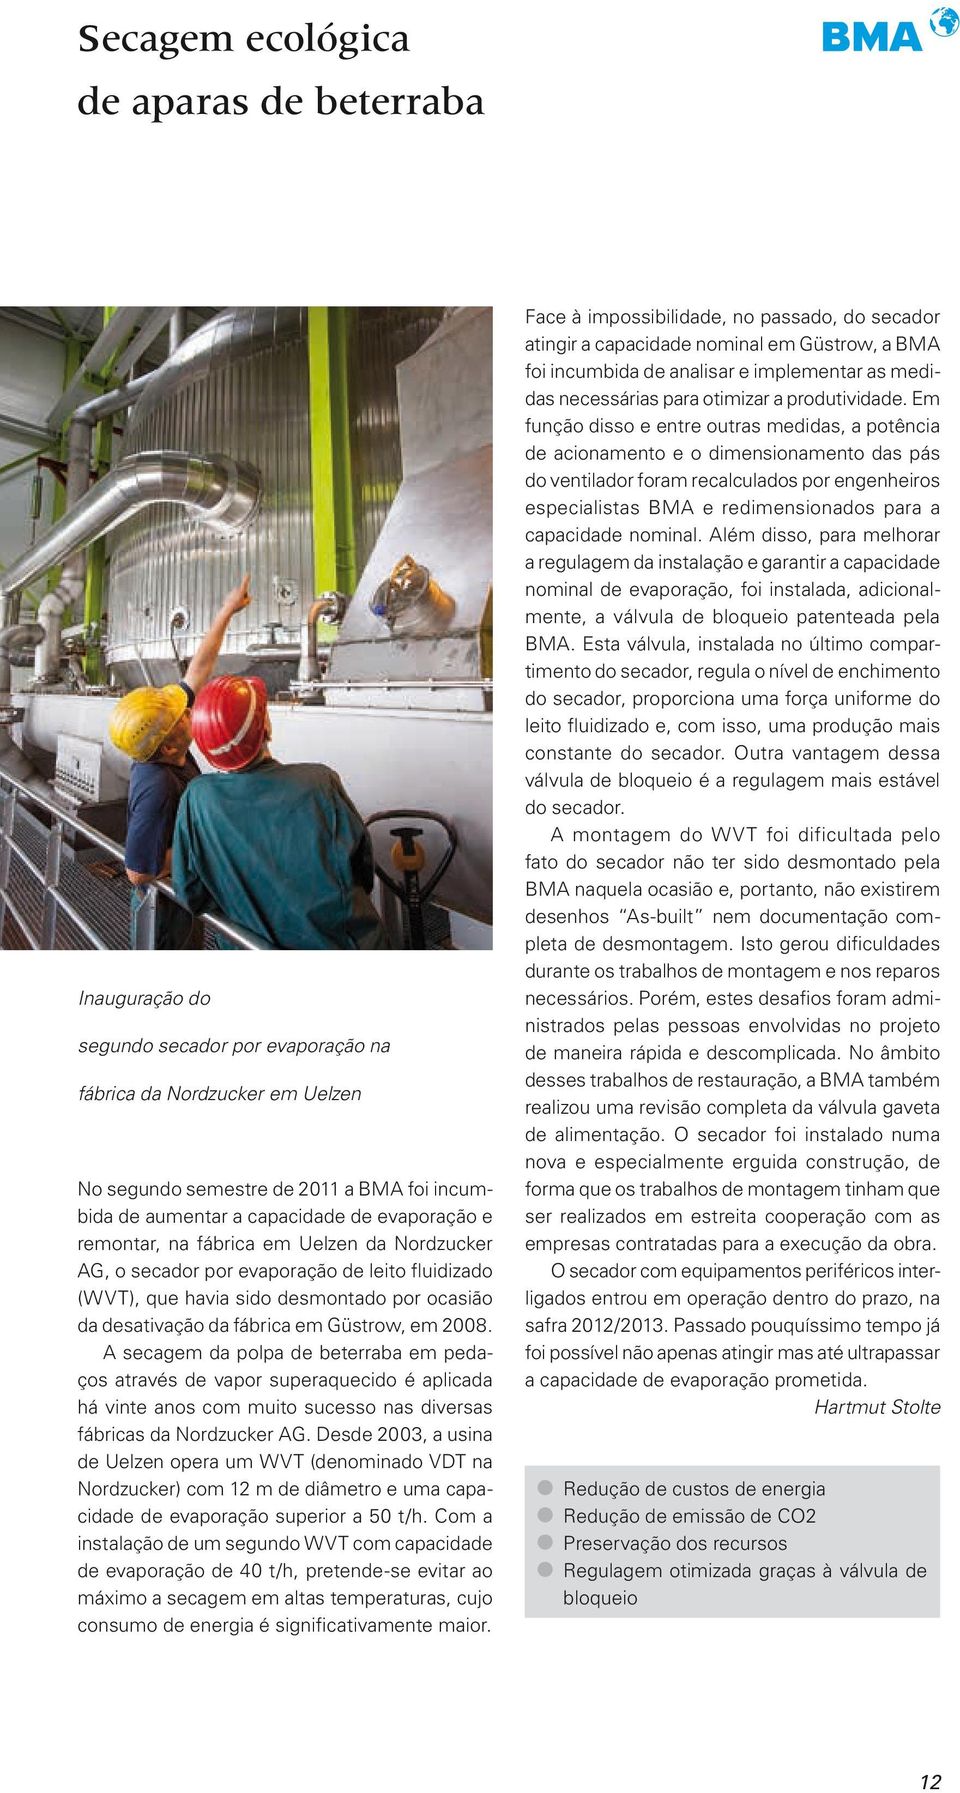 A secagem da polpa de beterraba em pedaços através de vapor superaquecido é aplicada há vinte anos com muito sucesso nas diversas fábricas da Nordzucker AG.